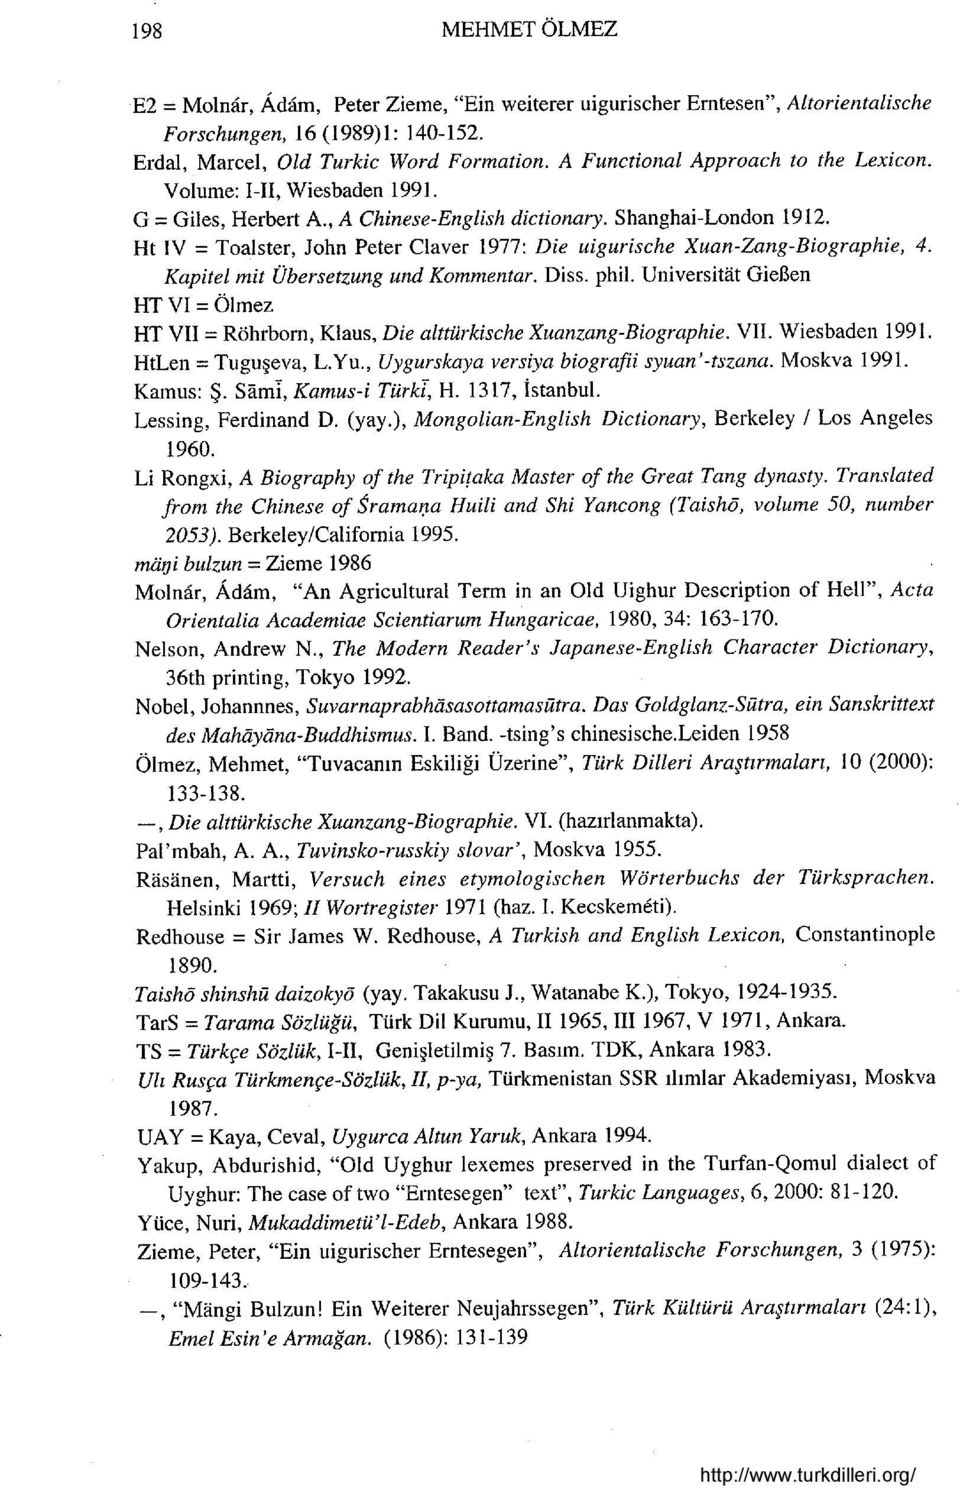 Ht IV = Toalster, John Peter Claver 1977: Die uigurische Xuan-Zang-Biographie, 4. Kapitel mit Übersetzung und Kommentar. Diss. phil.